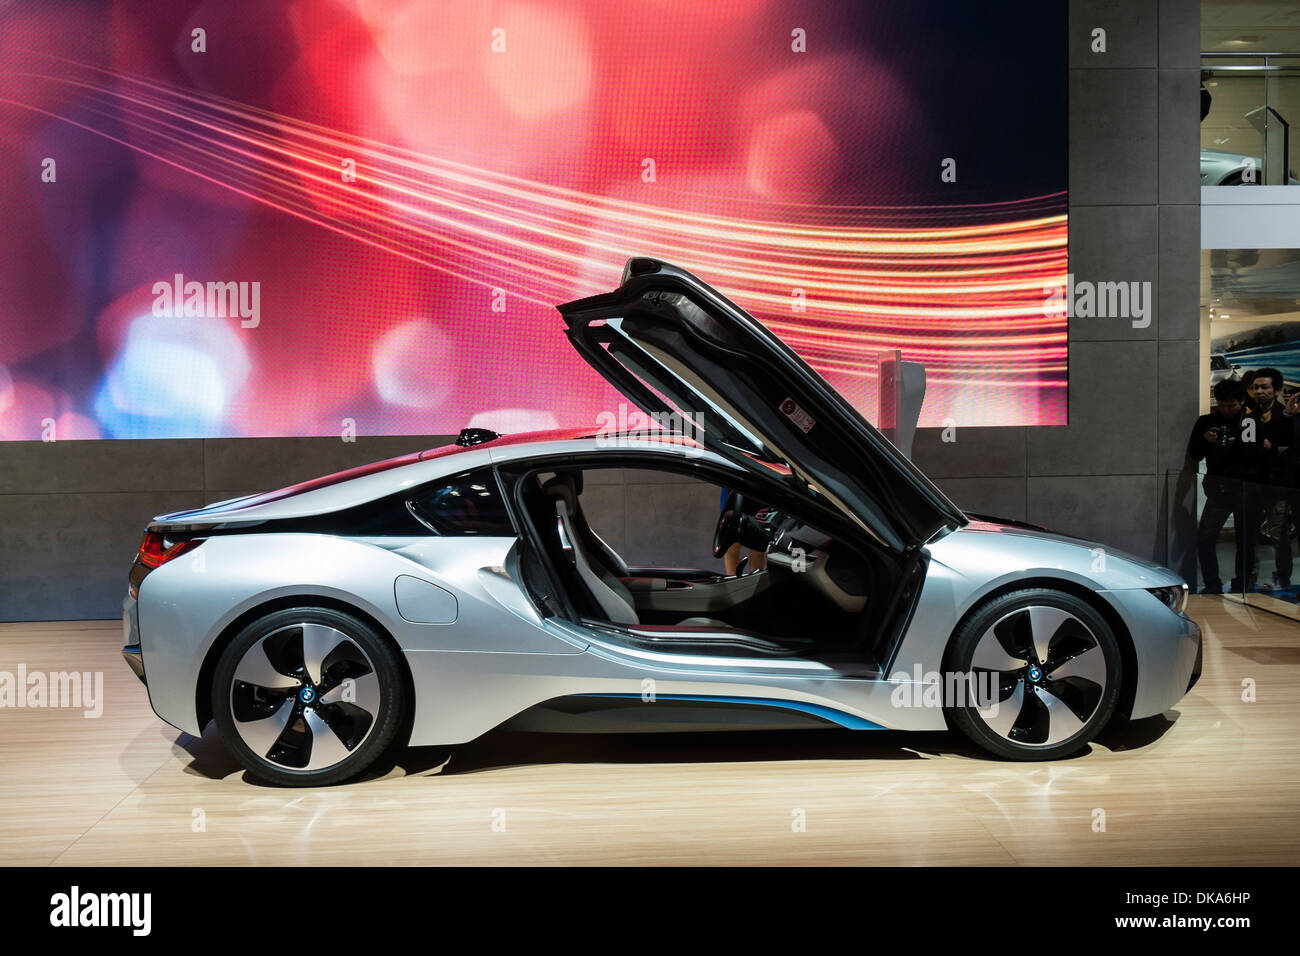 La BMW i8 plug-in hybrid electric au Salon de l'automobile 2013 au Japon Banque D'Images